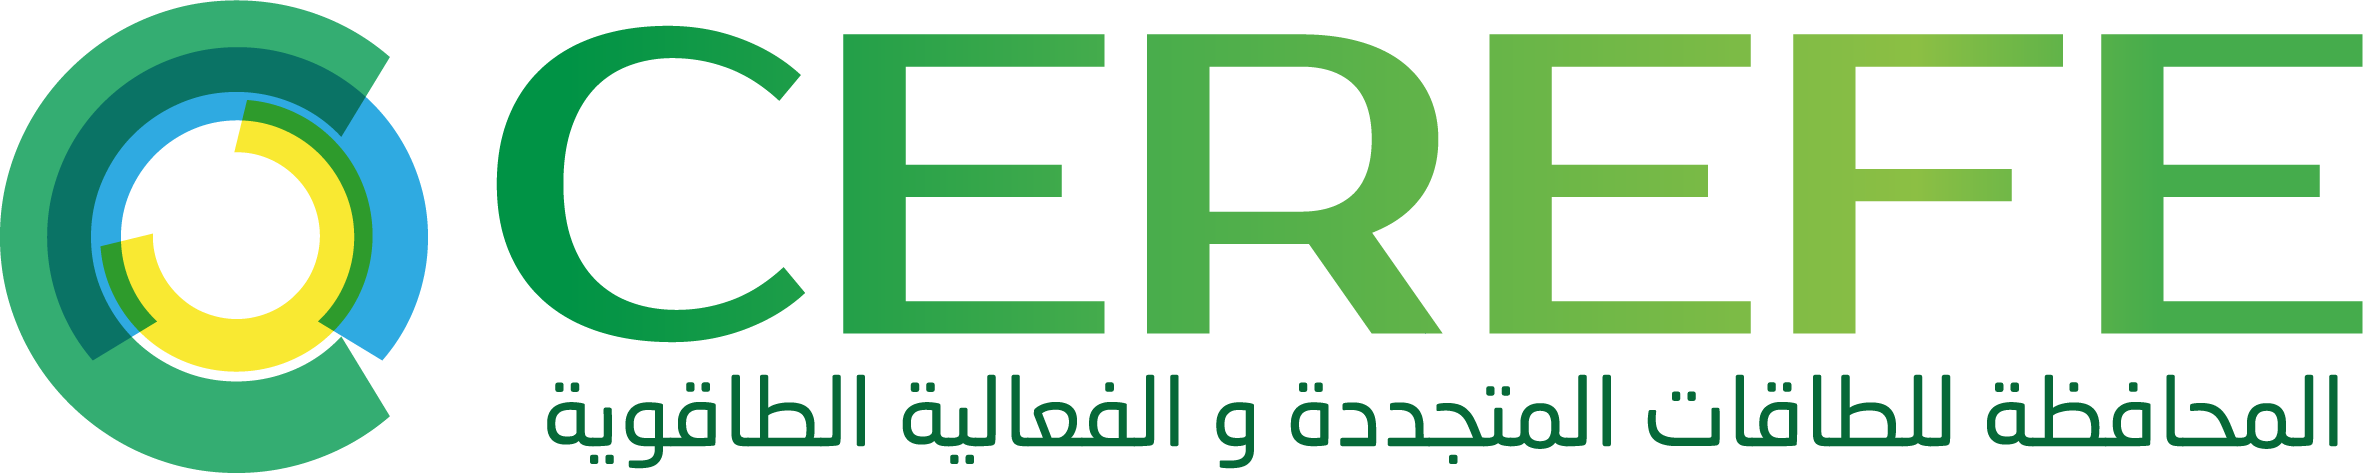 logo CEREFE 3